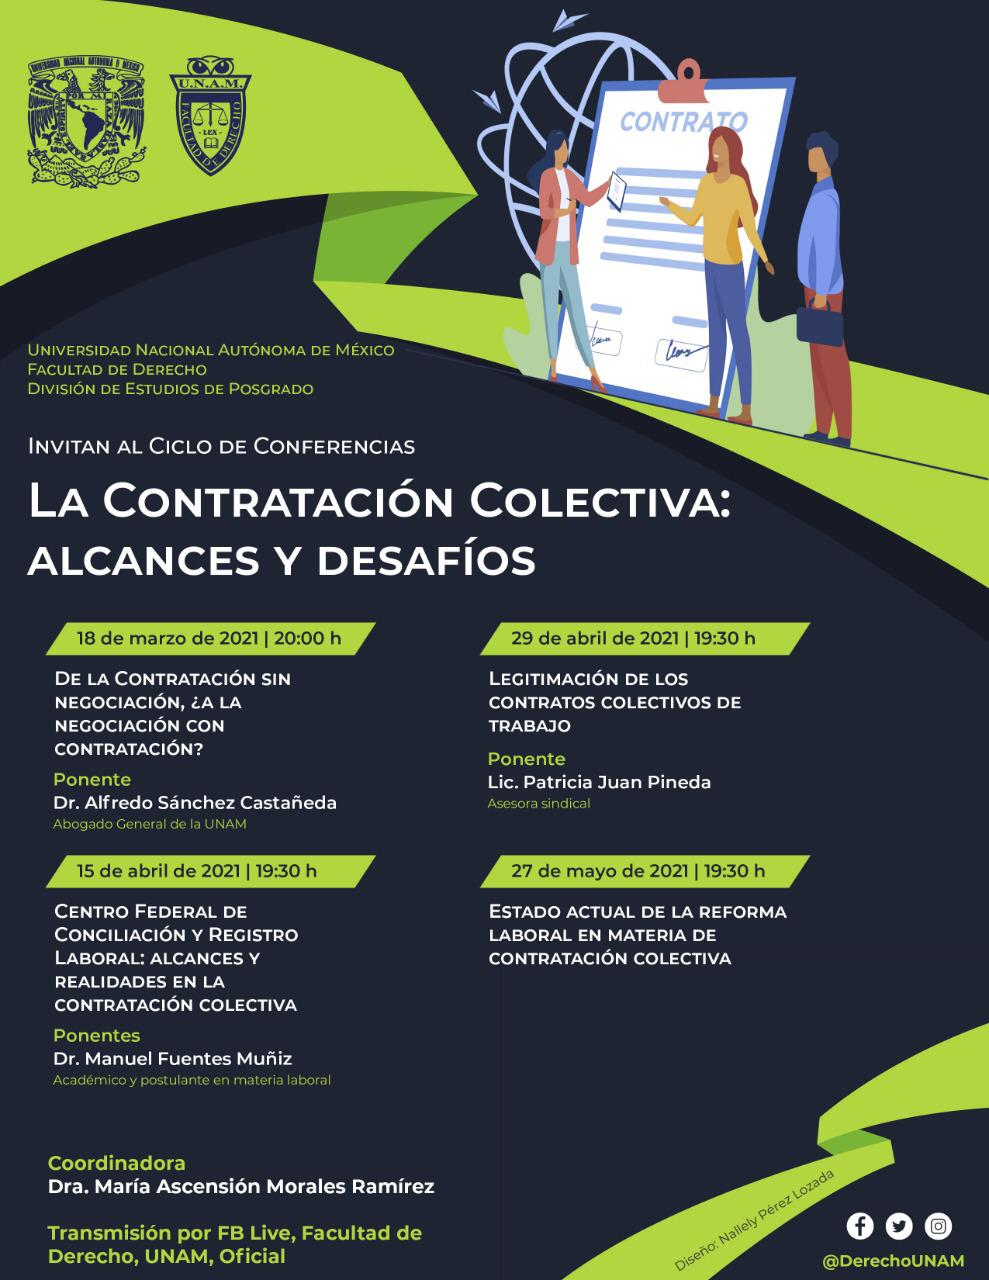 EN AGENDHA | Ciclo de conferencias “La contratación colectiva: alcances y desafíos”